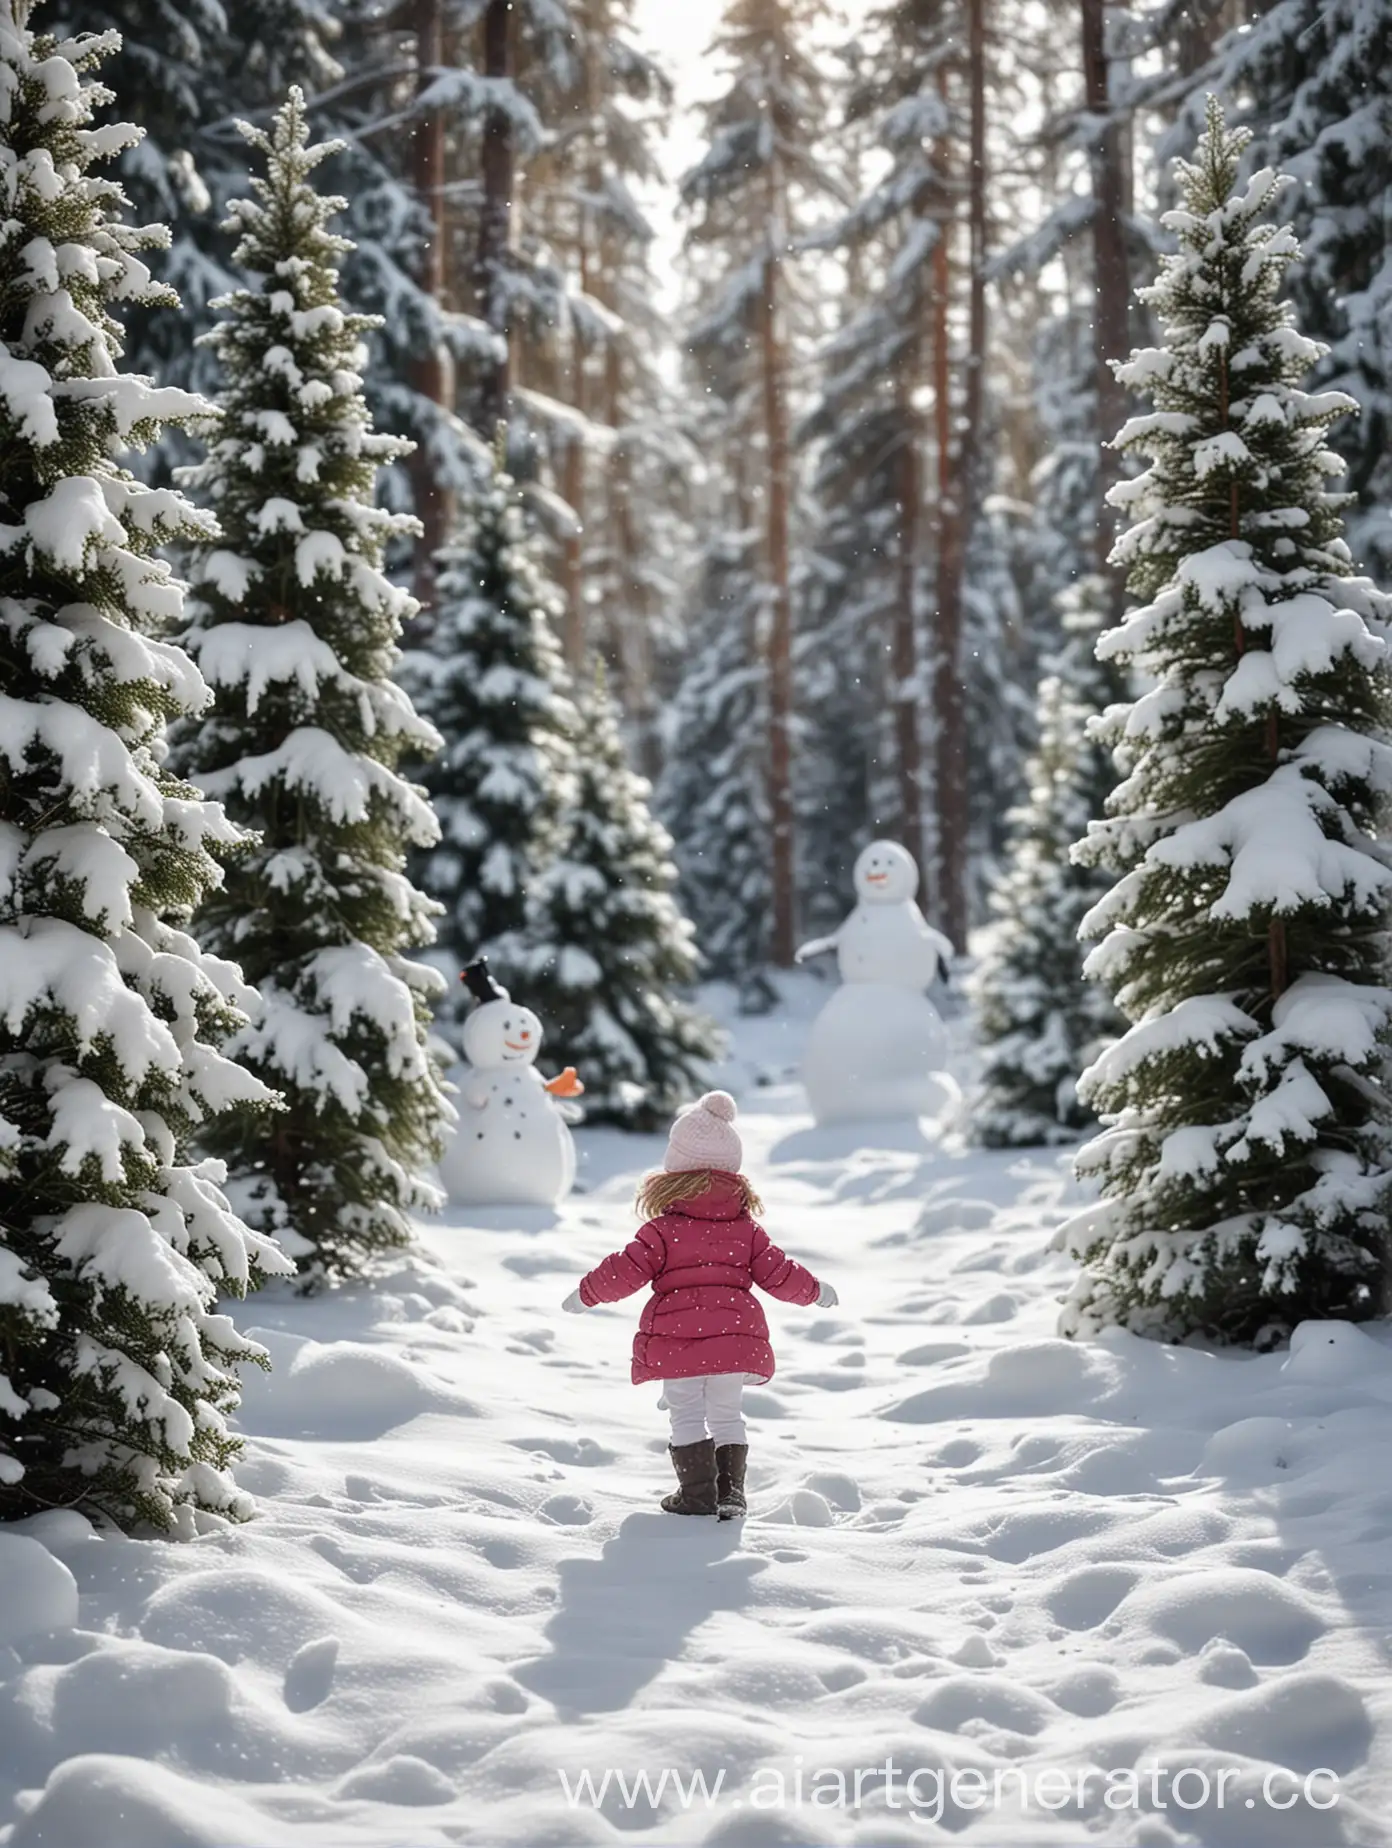 Маленькая девочка на снежной поляне, под ногами снег и сугробы, стоит снеговик, по краям заснеженные елки, на фоне зимний лес, фон сильно размыт, очень реалистично